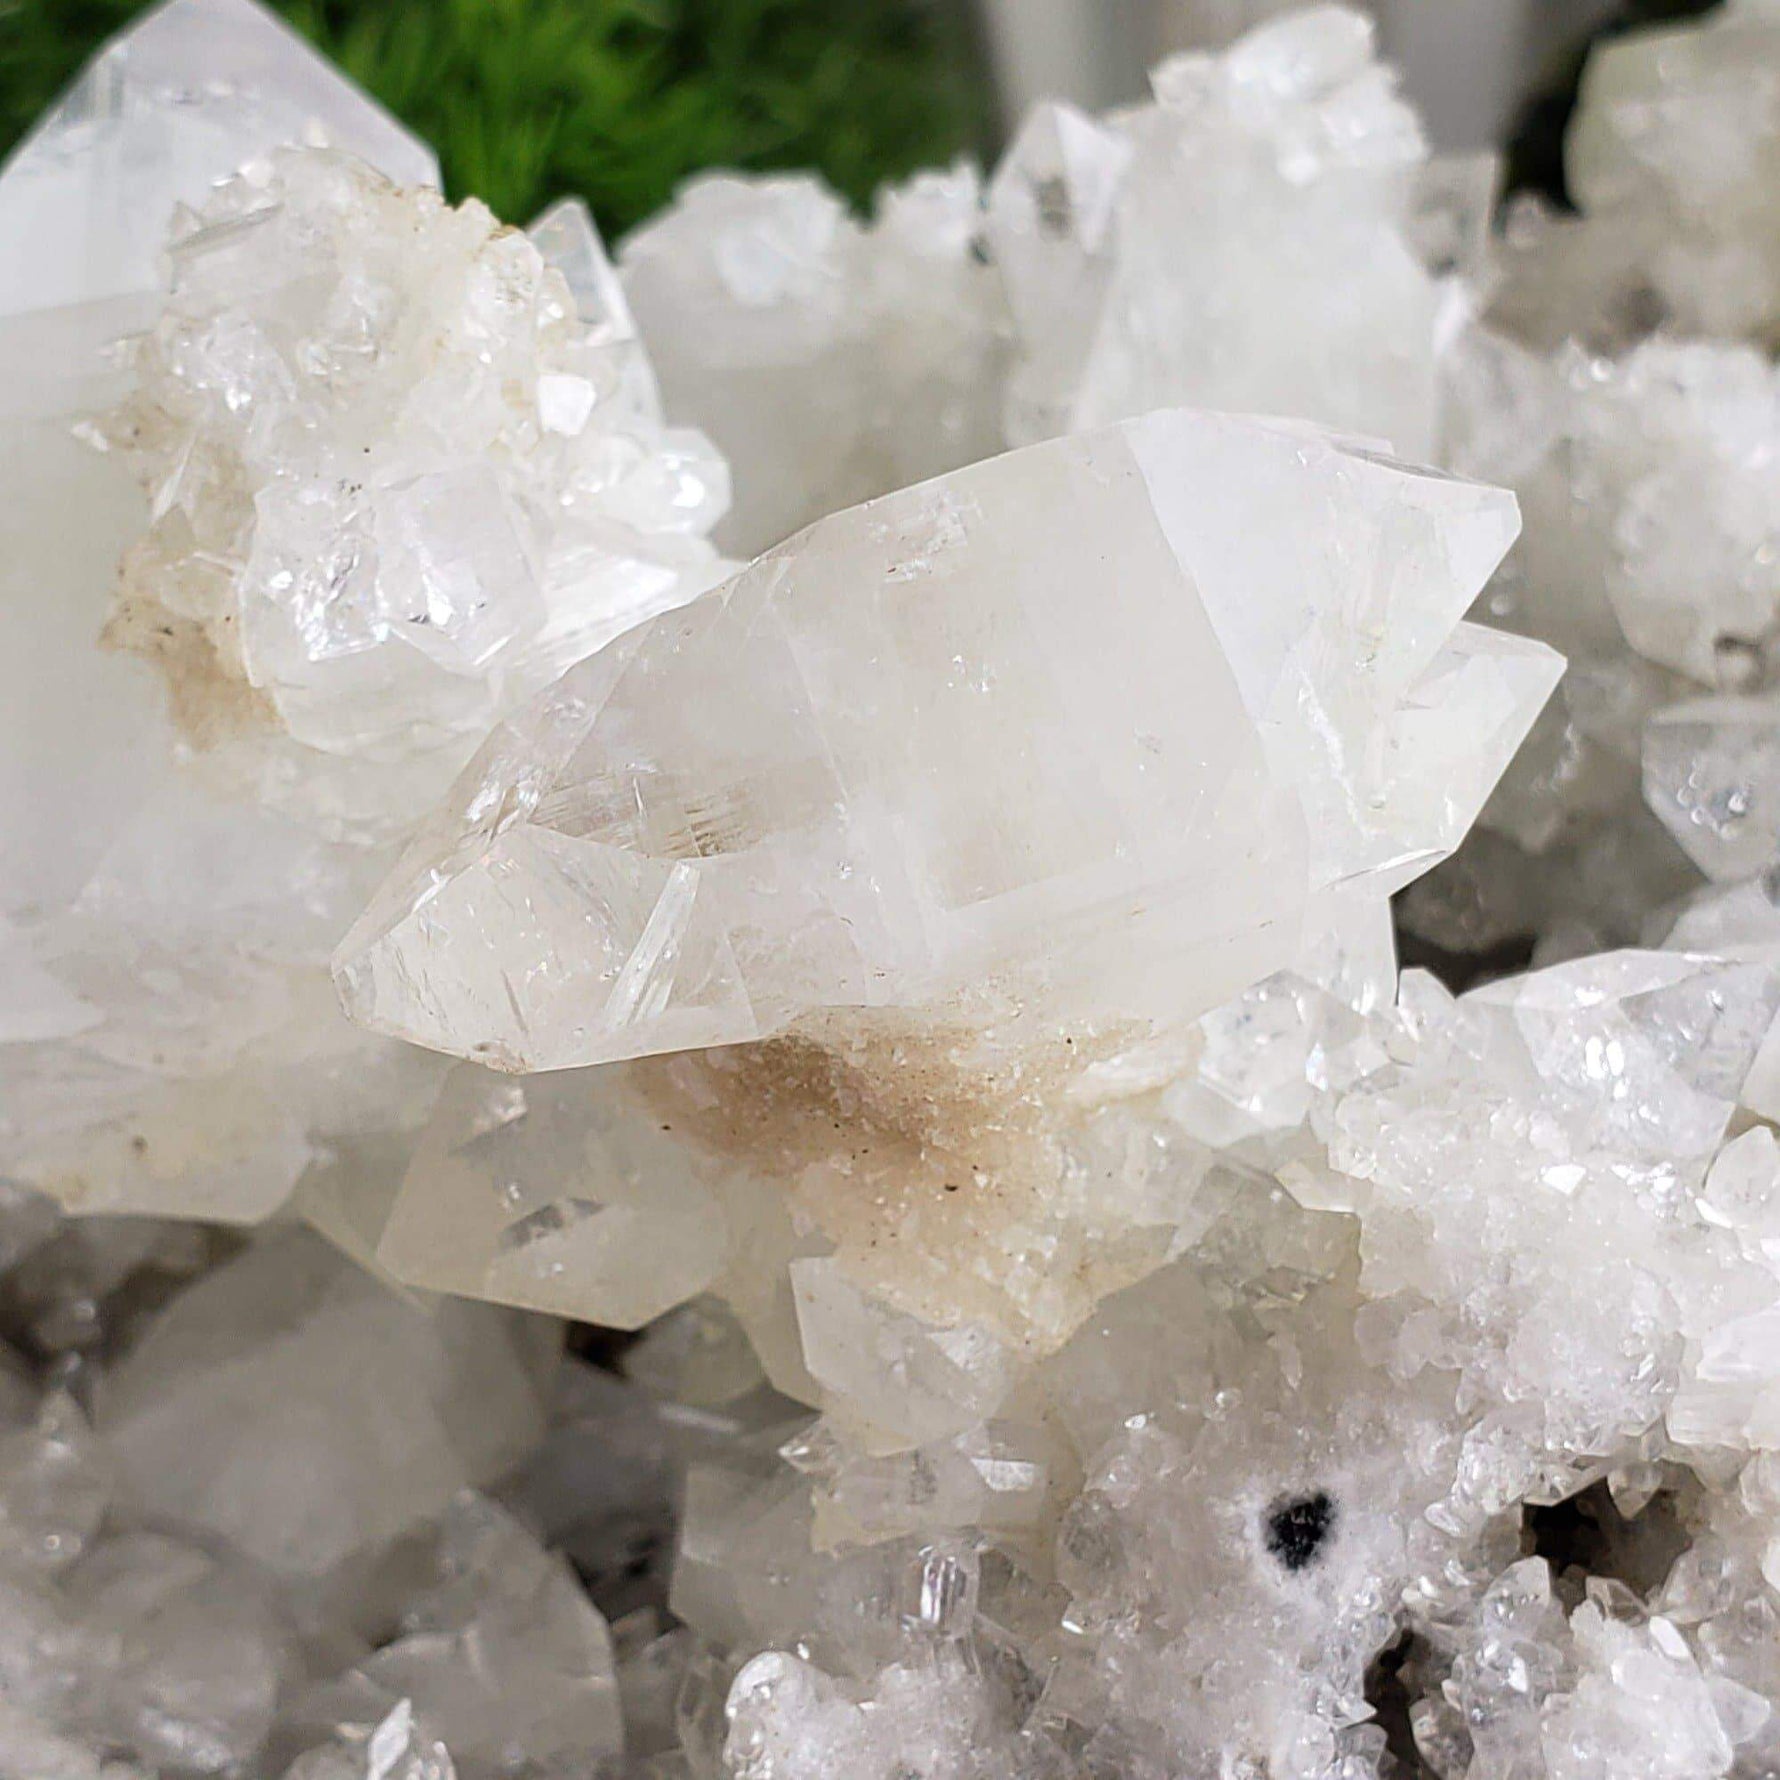 Apophyllite and Stilbite on Chalcedony Druse | 3.71 KG | Double Terminated Crystal | Jalgaon, India